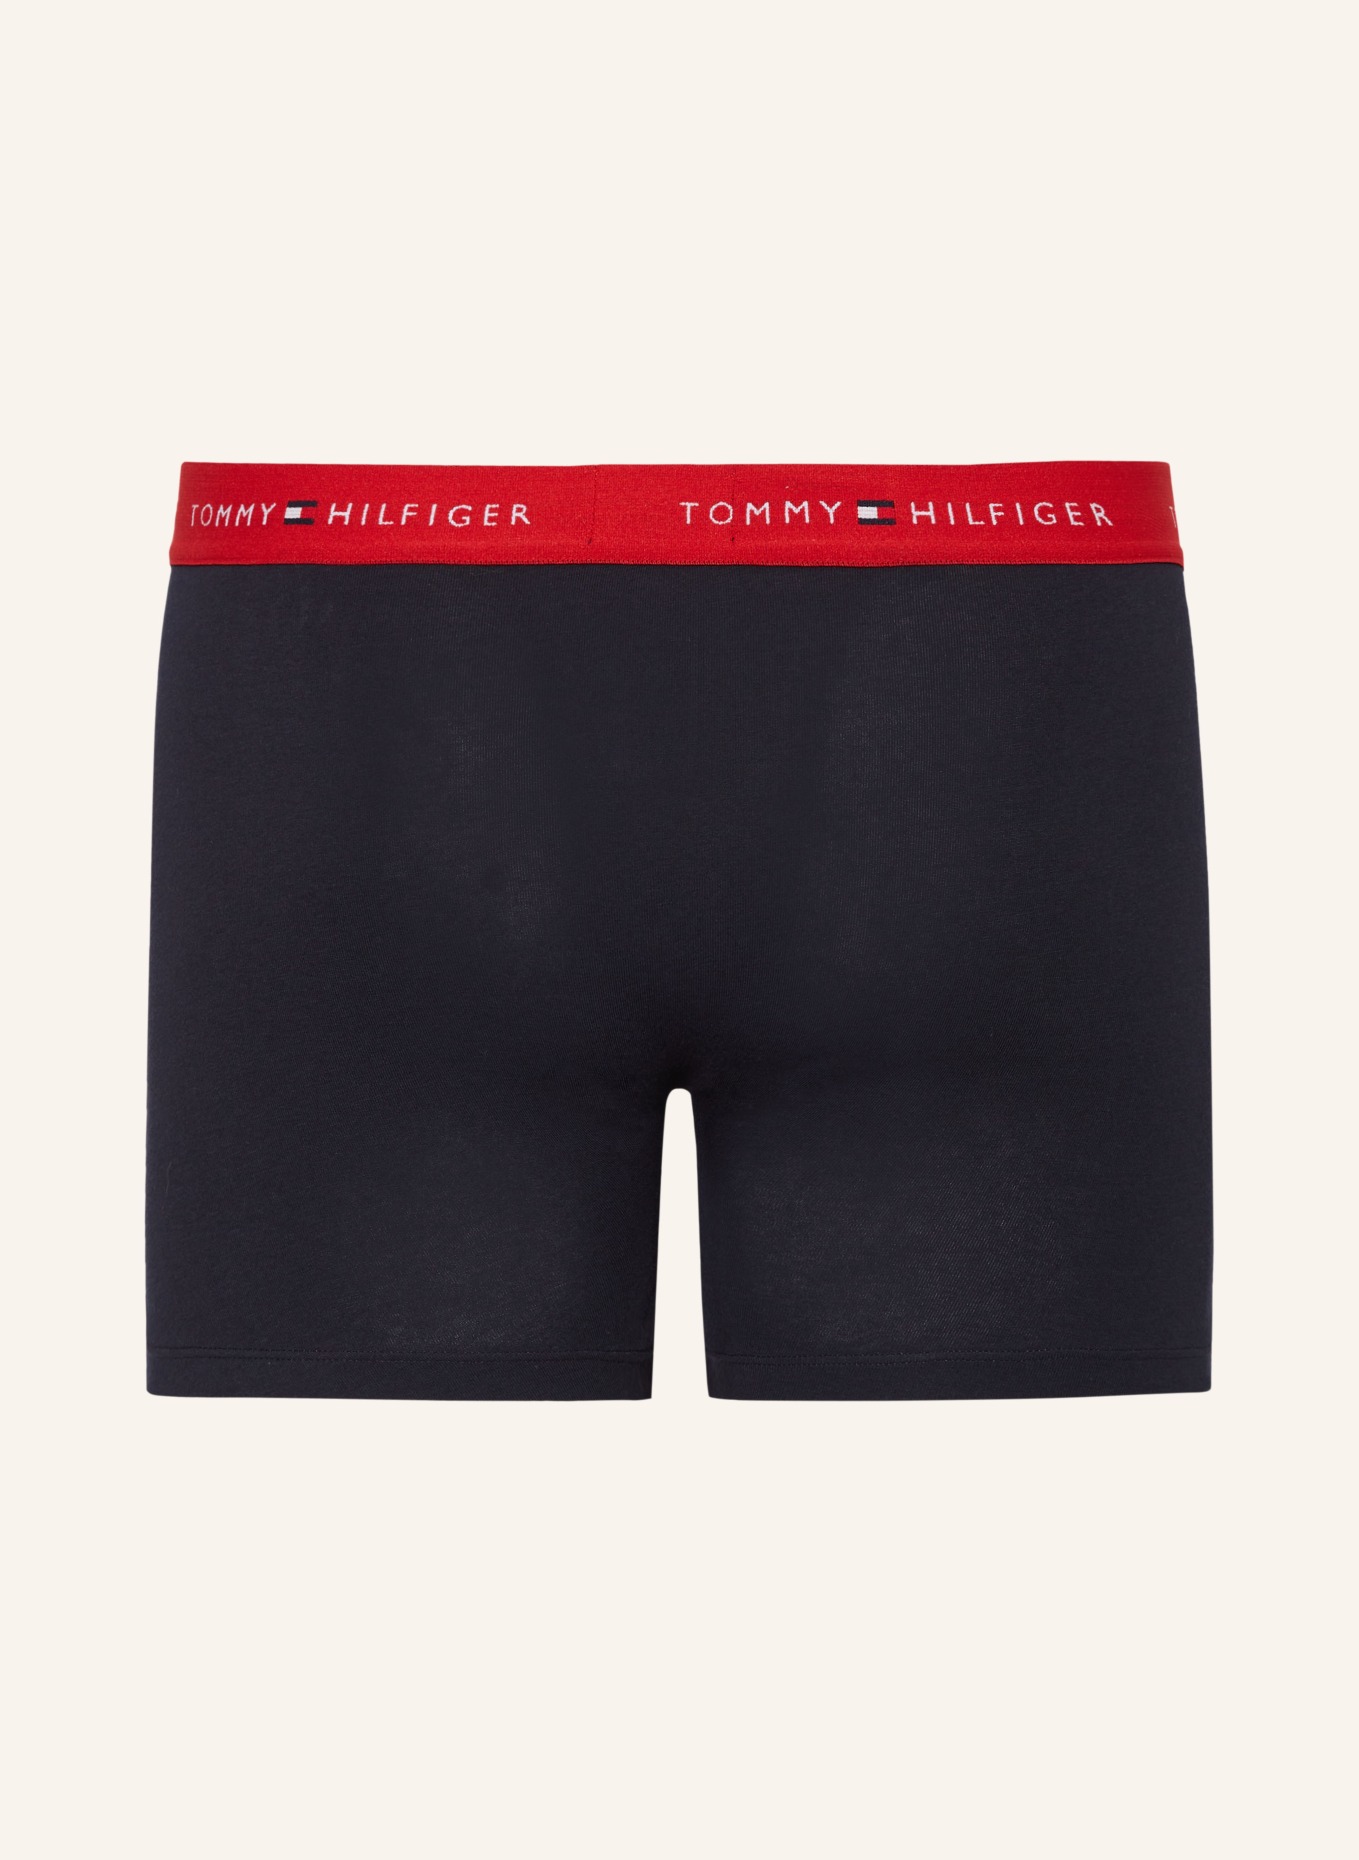 TOMMY HILFIGER 3-pack boxer shorts, Color: DARK BLUE (Image 2)